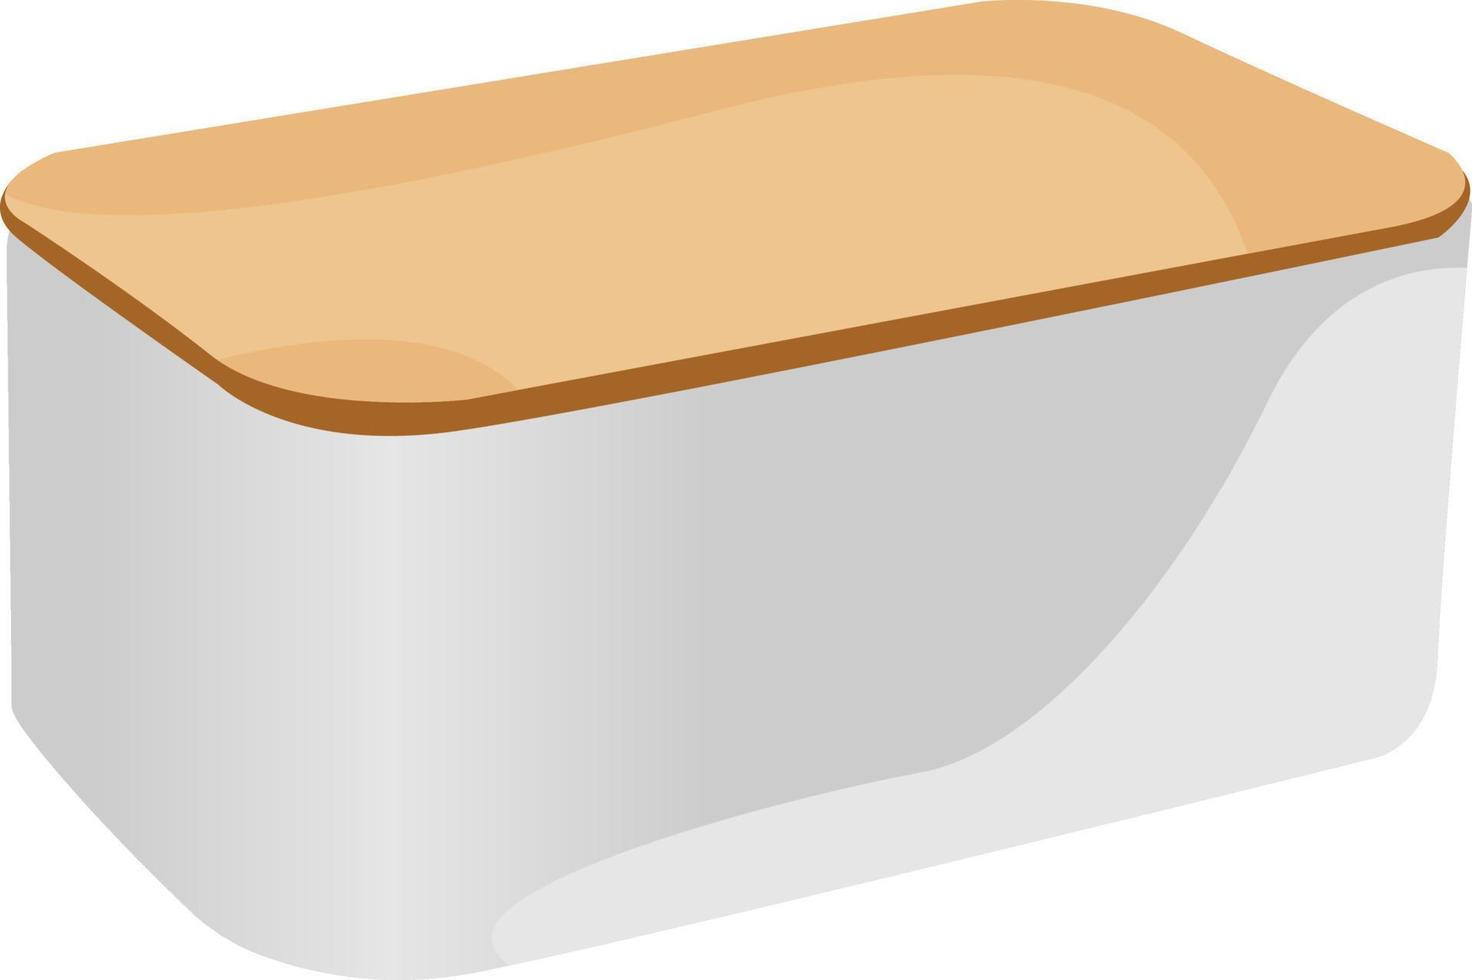 caja de pan, ilustración, vector sobre fondo blanco